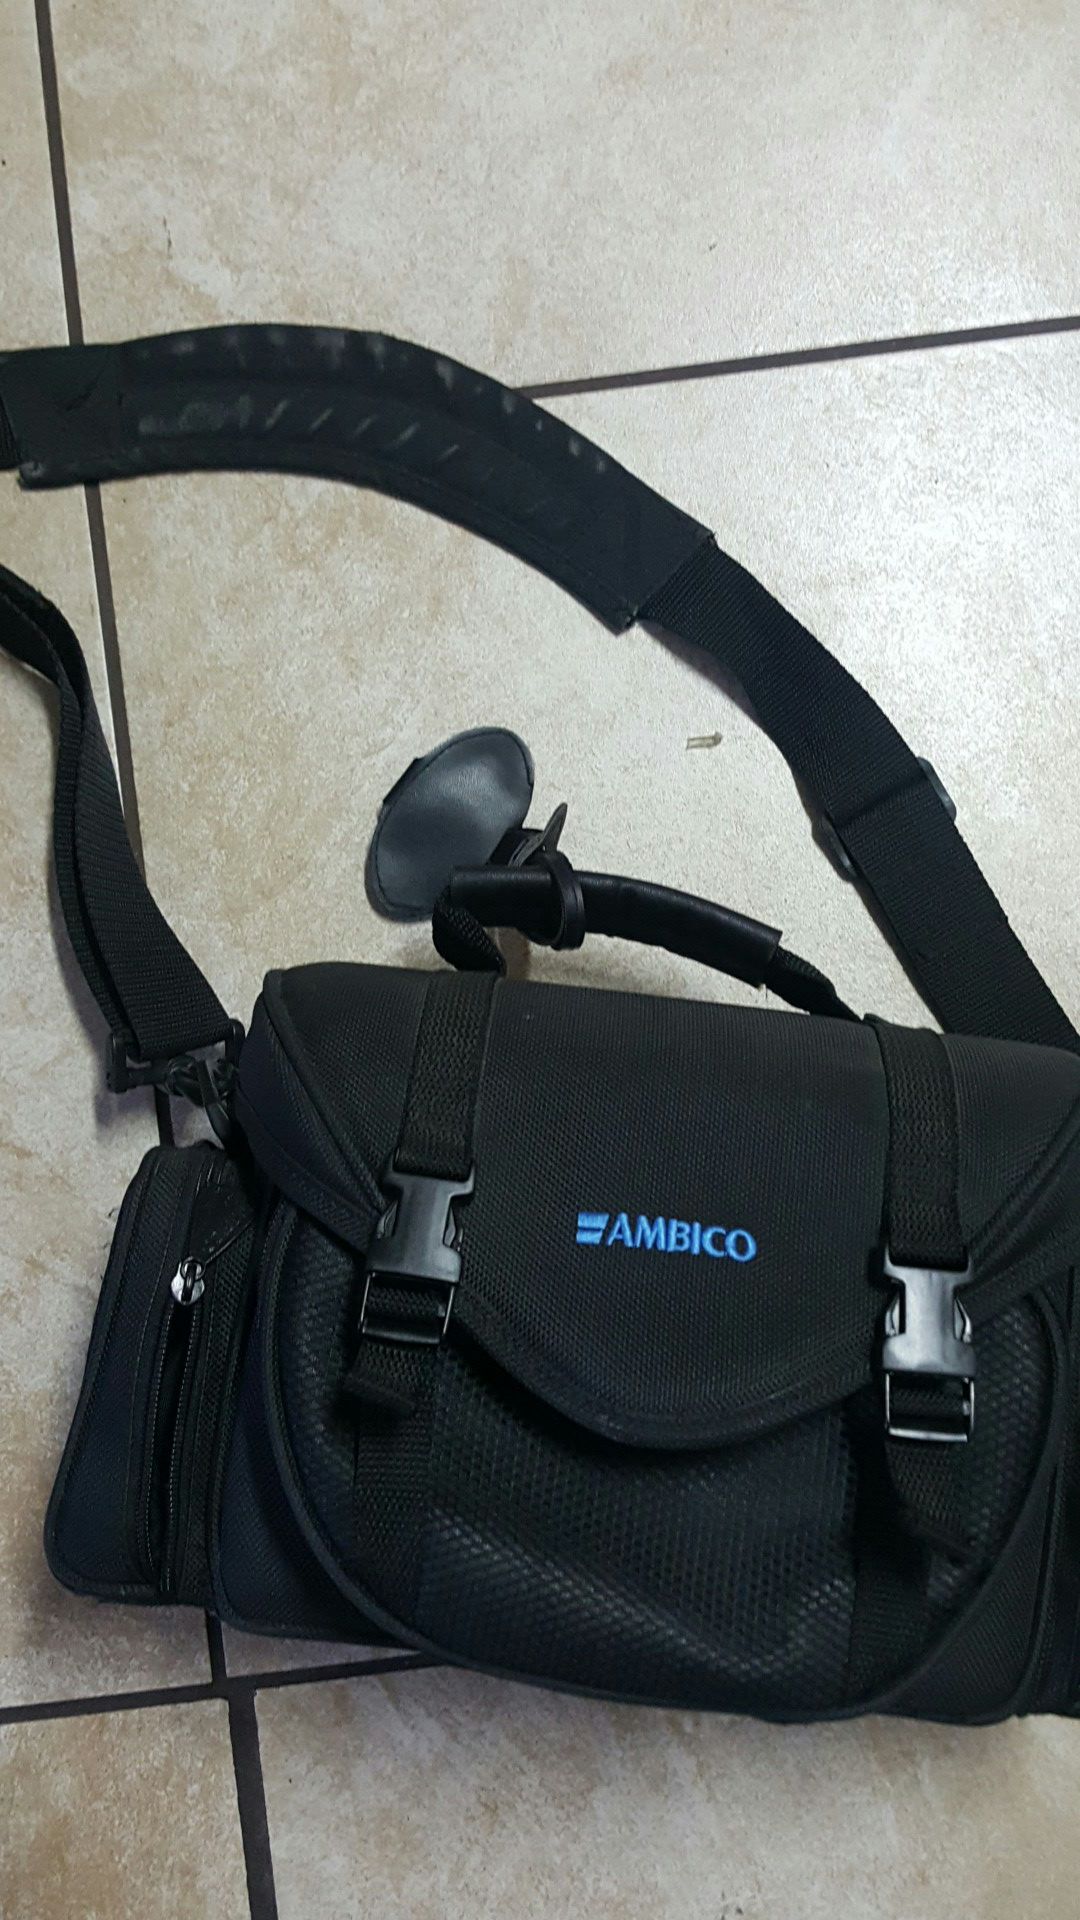 Ambico camera bag